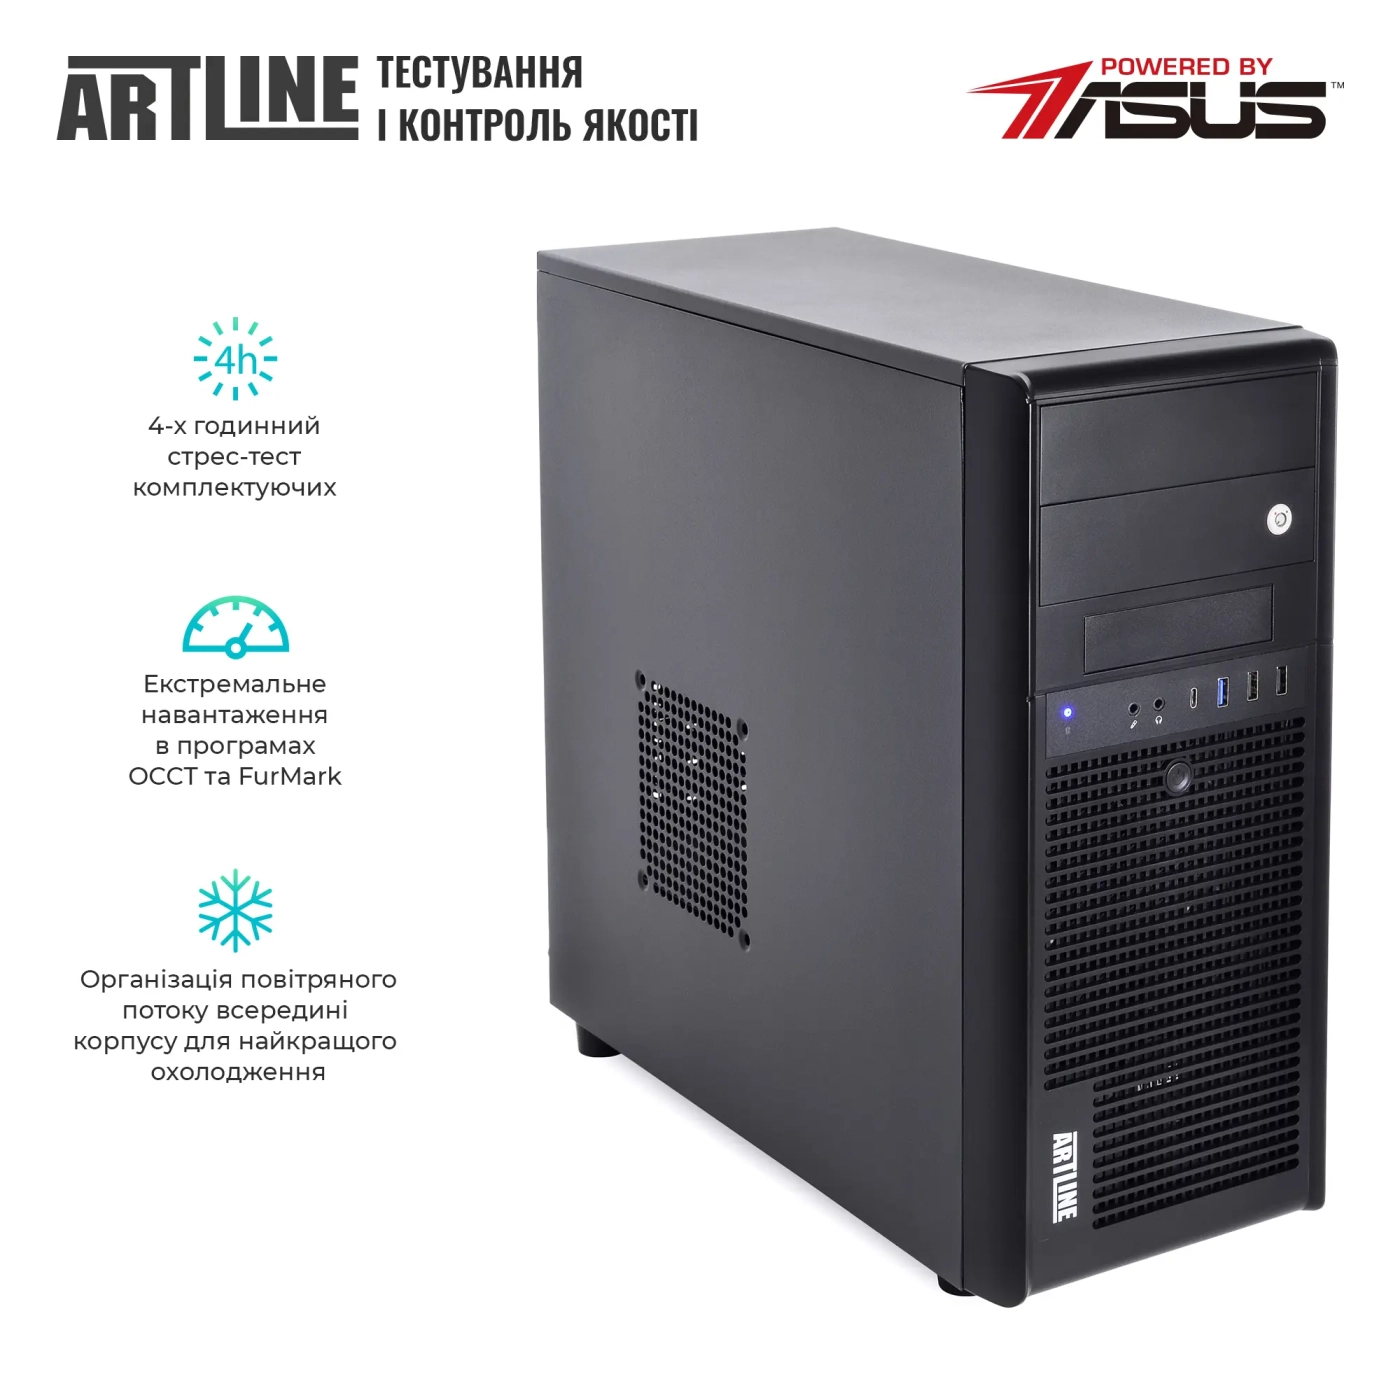 Купить Сервер ARTLINE Business T34 (T34v15) - фото 7